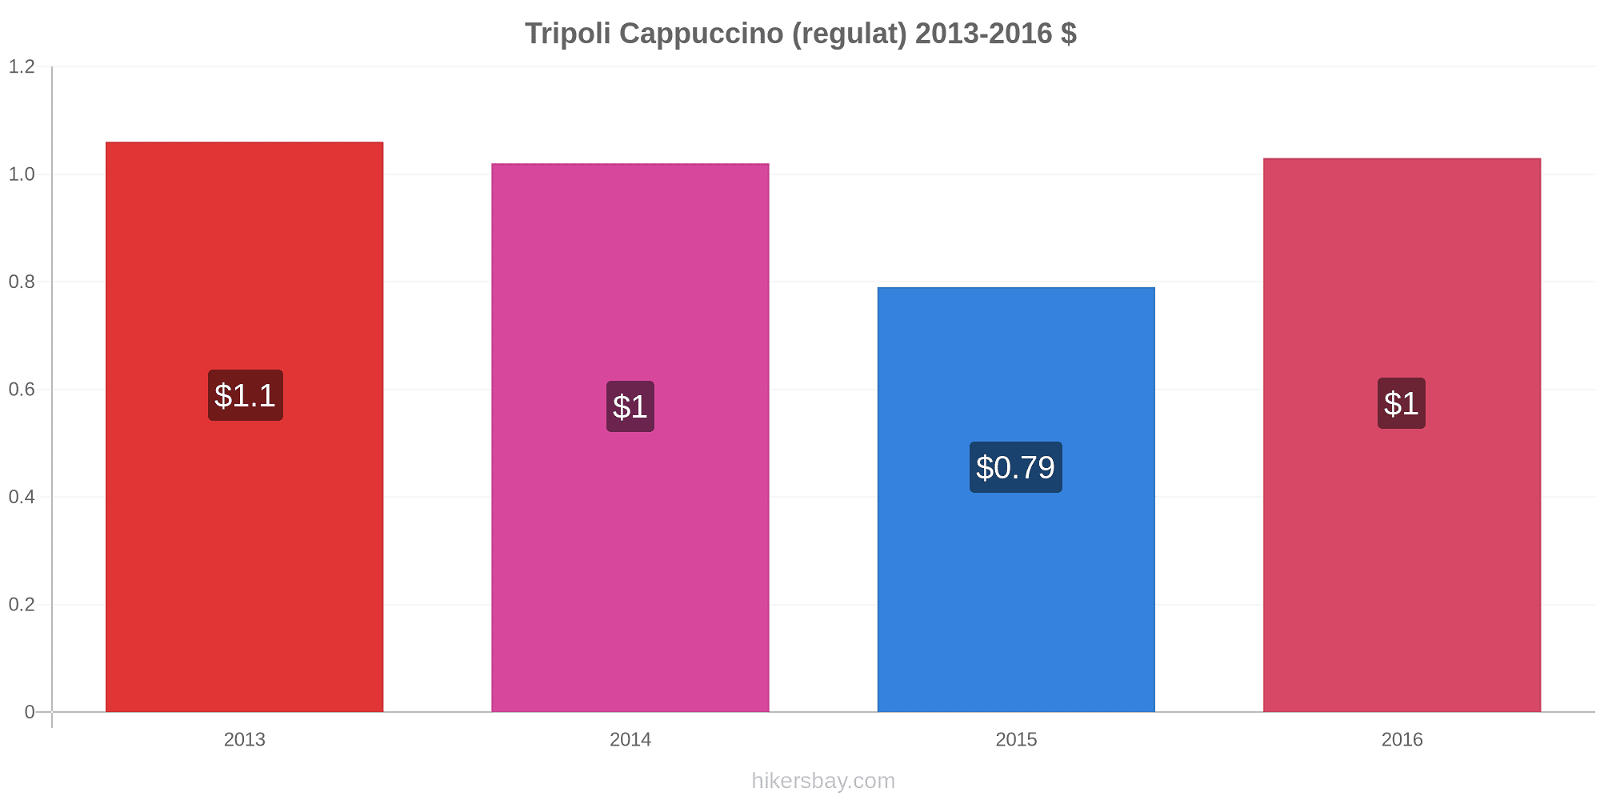 Tripoli modificări de preț Cappuccino (regulat) hikersbay.com